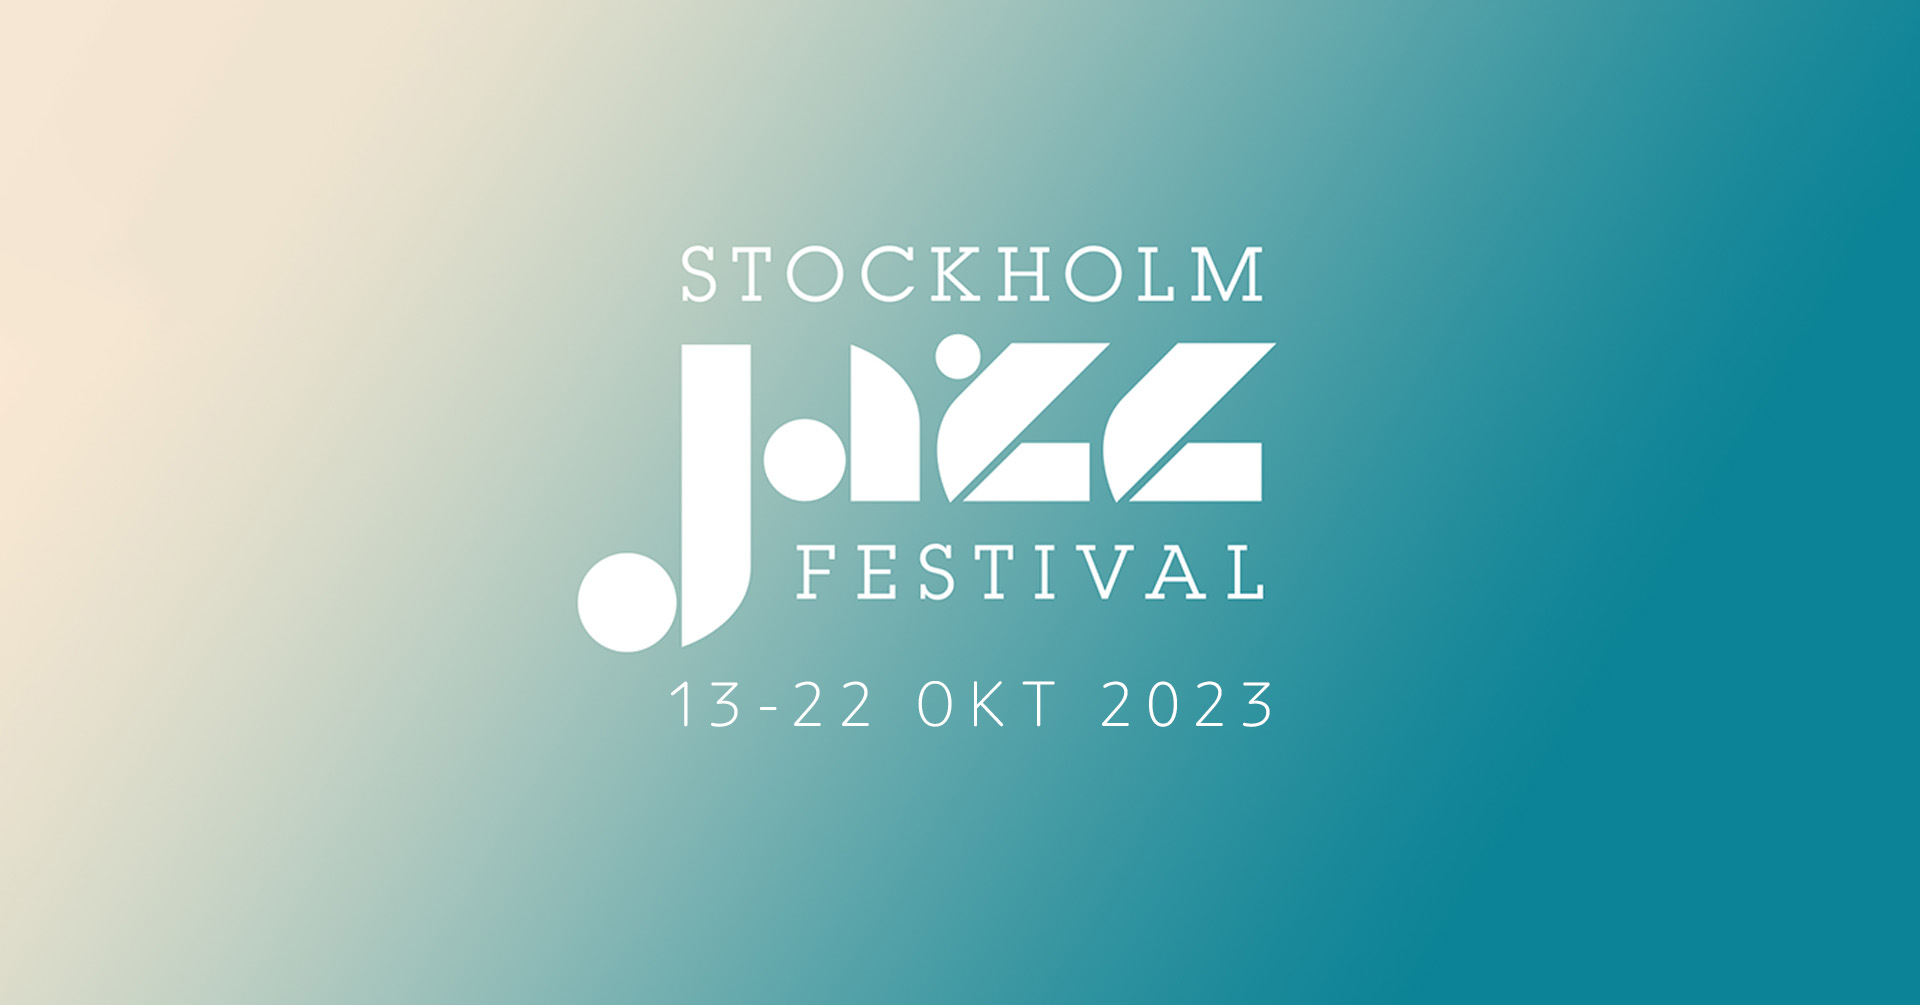 Stockholm Jazz Festival 2023 - Visit Stockholm